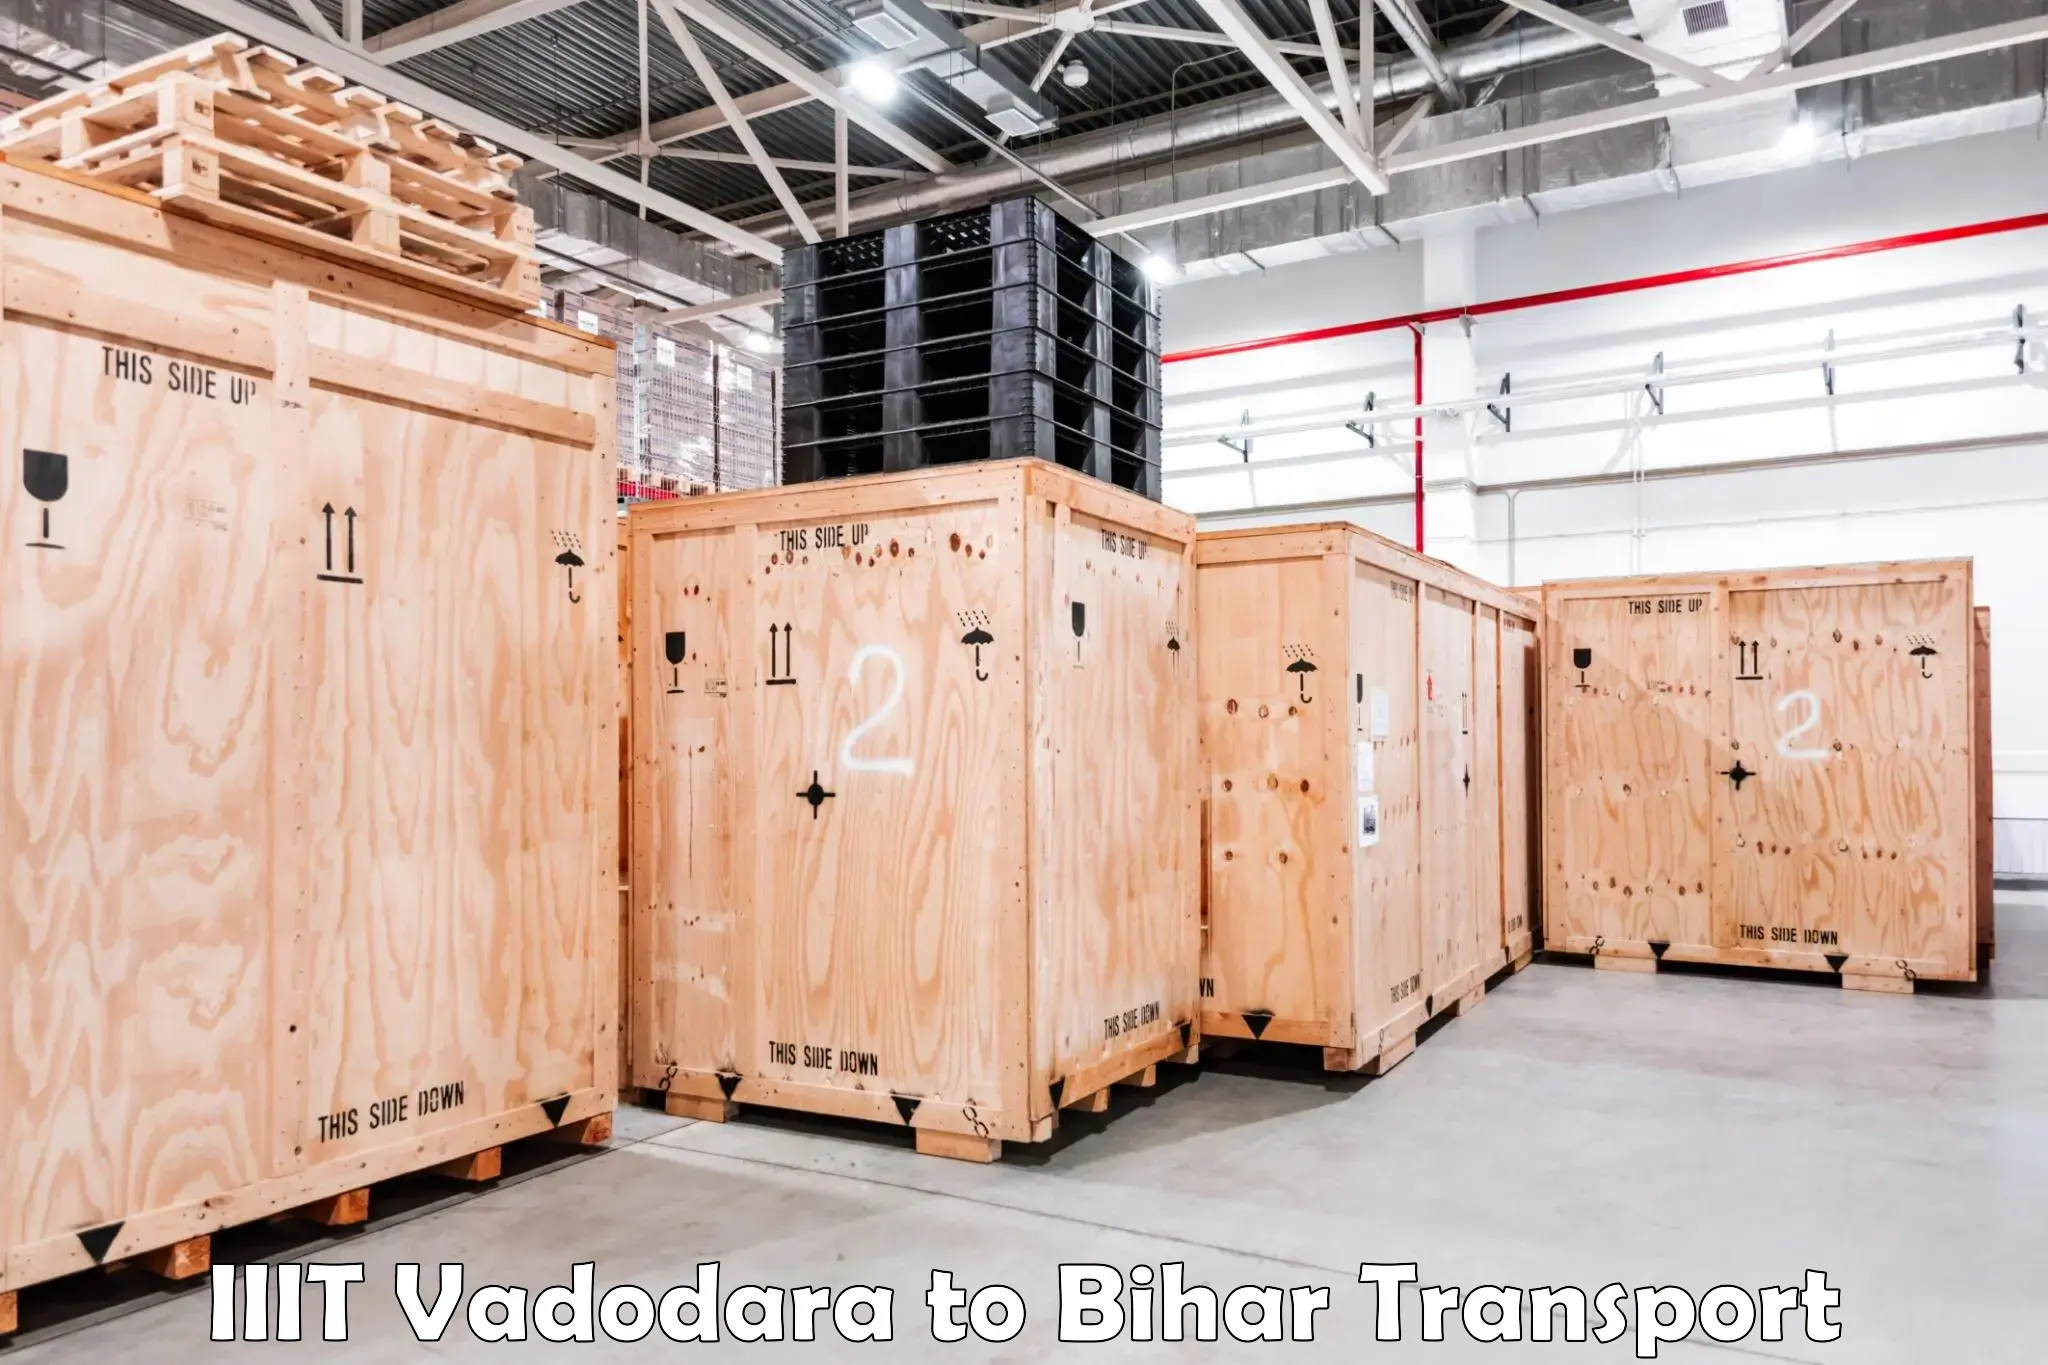 Transport in sharing IIIT Vadodara to Bihar